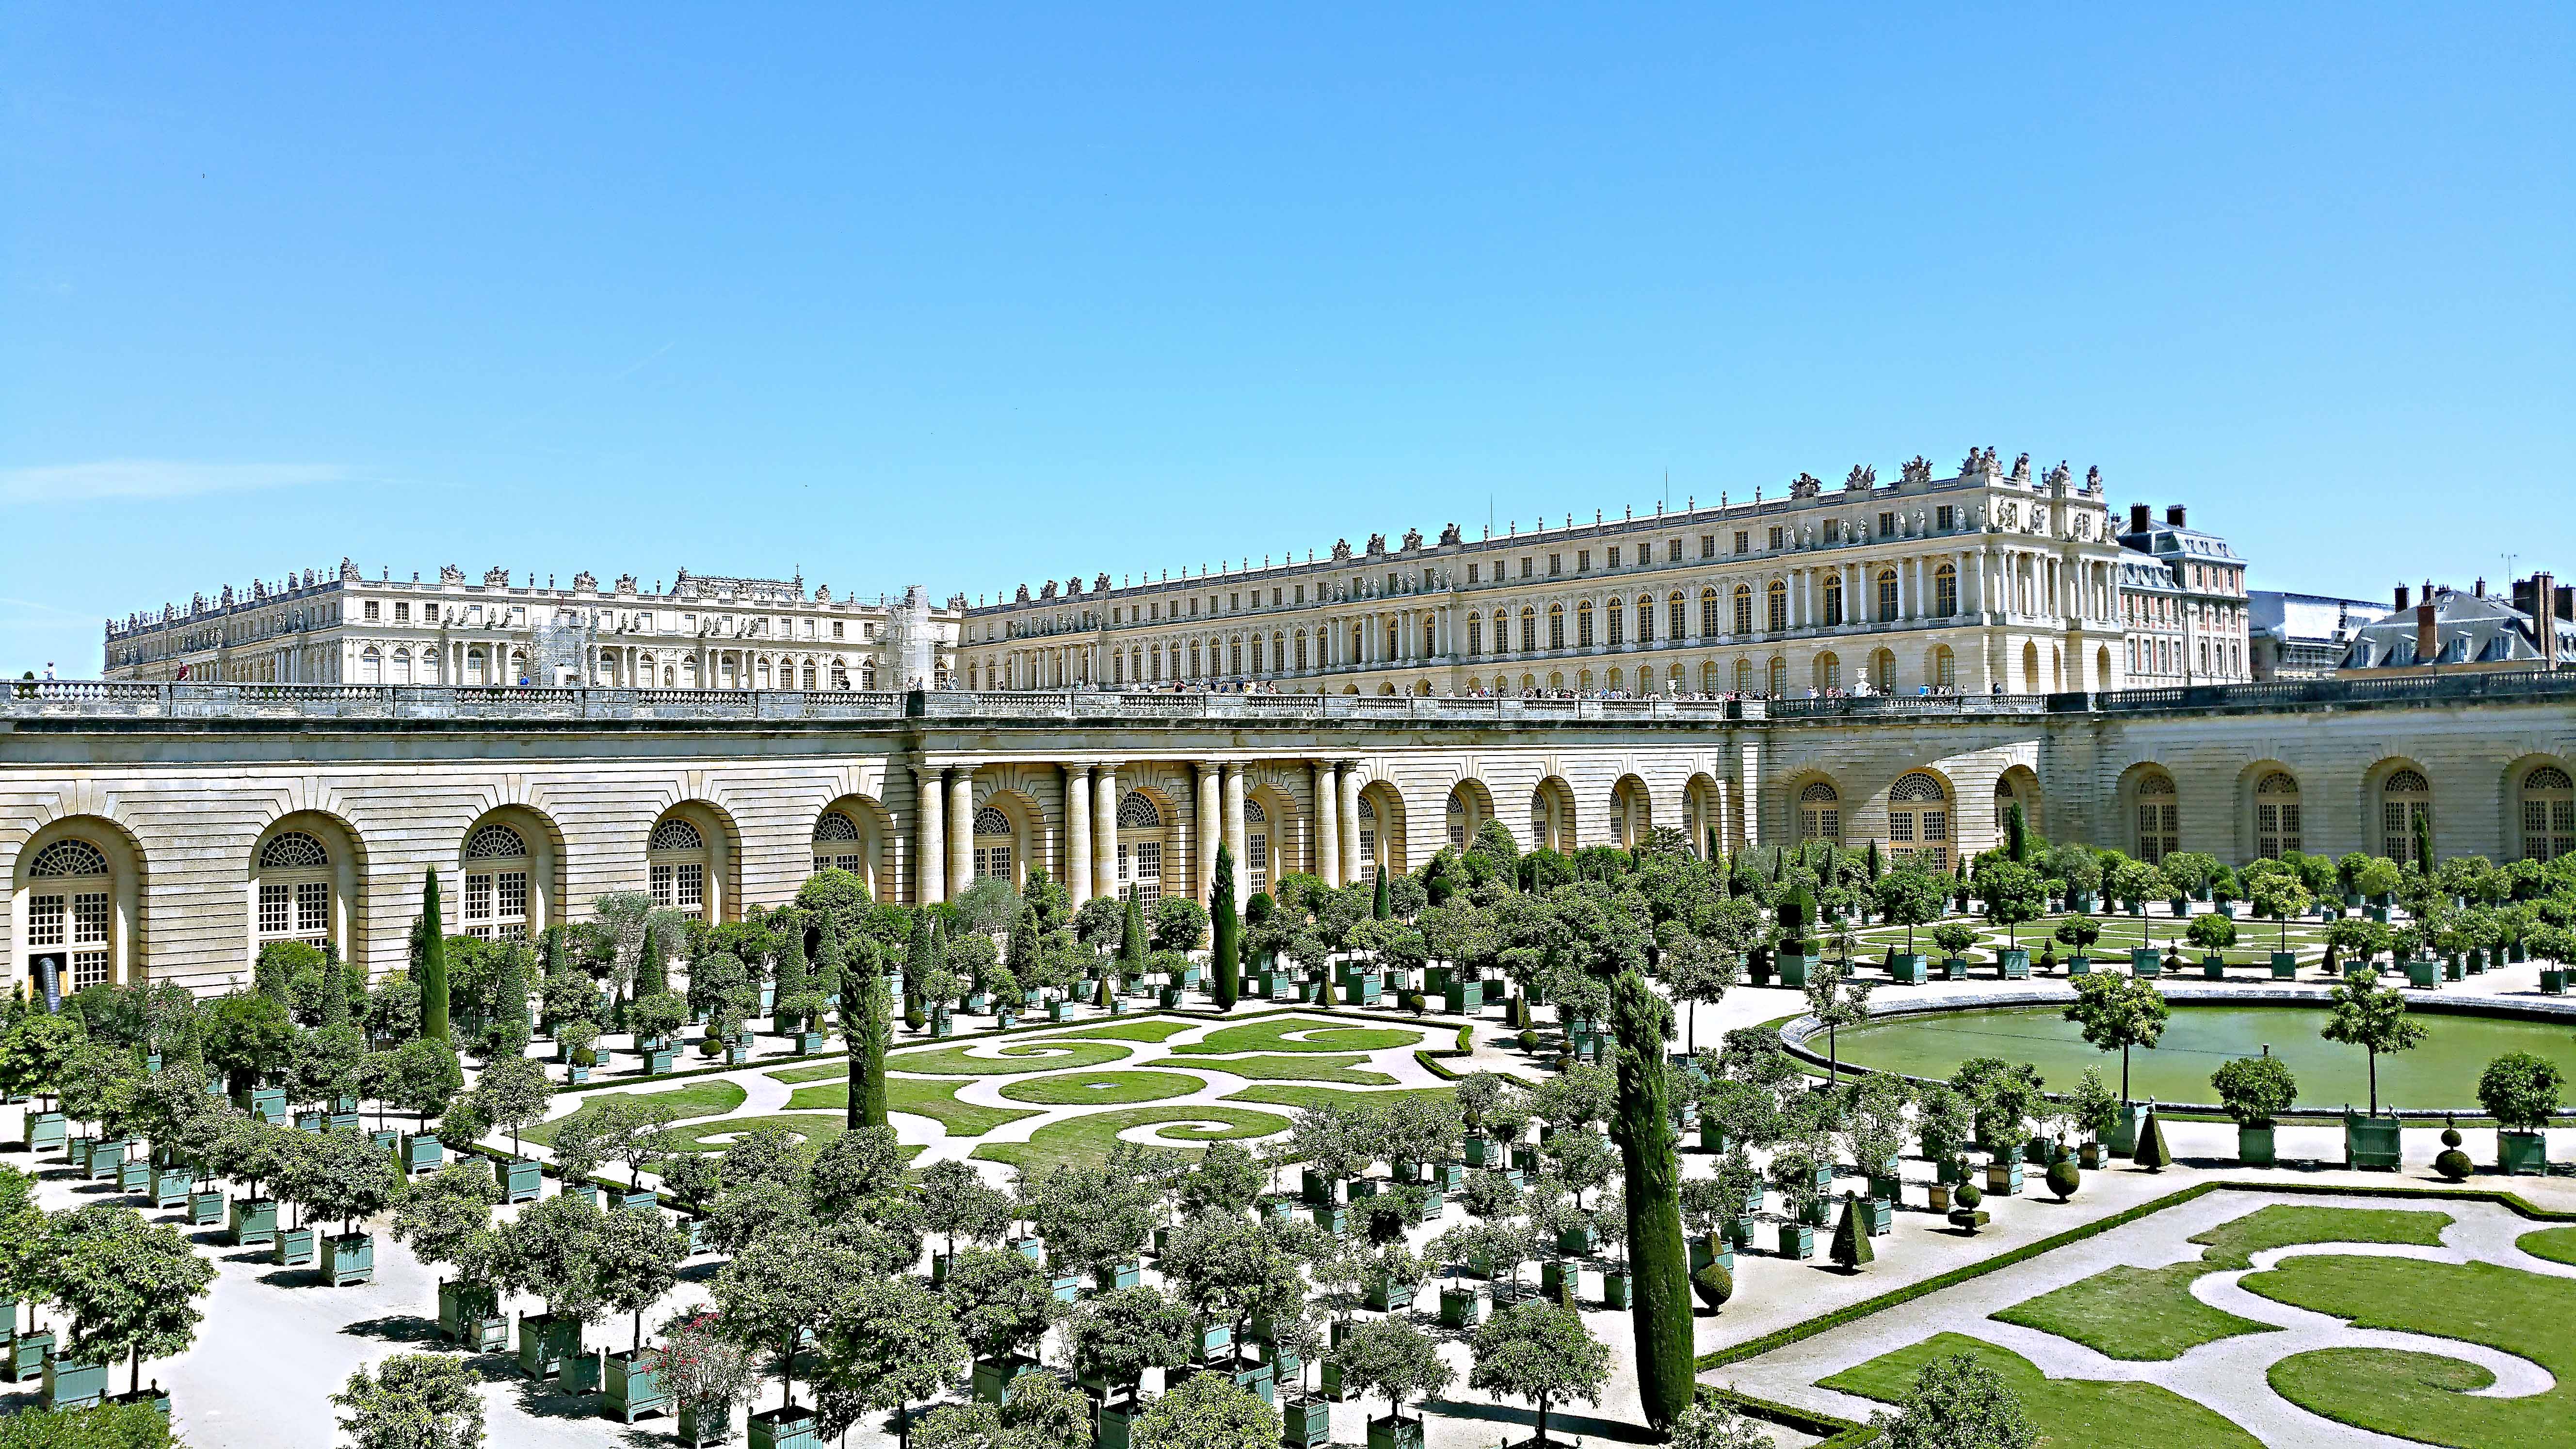 Eine Augenweide in Versailles ist auch der weitläufige, gepflegte Schlosspark.